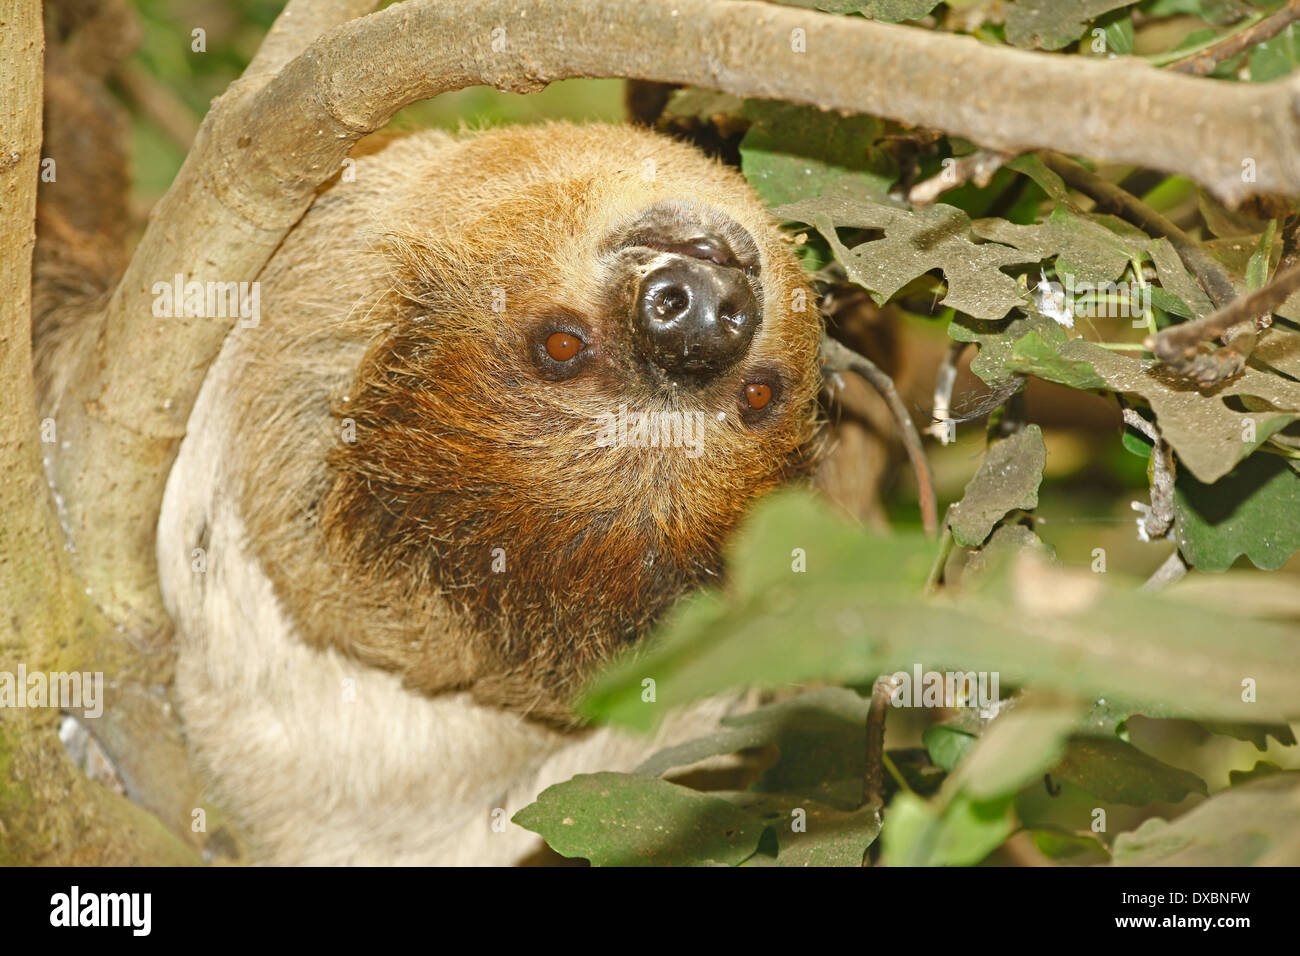 Deux doigts de Linné, paresseux ou le sud deux-toed Sloth (Choloepus didactylus) libre dans l'habitat des forêts tropicales Banque D'Images